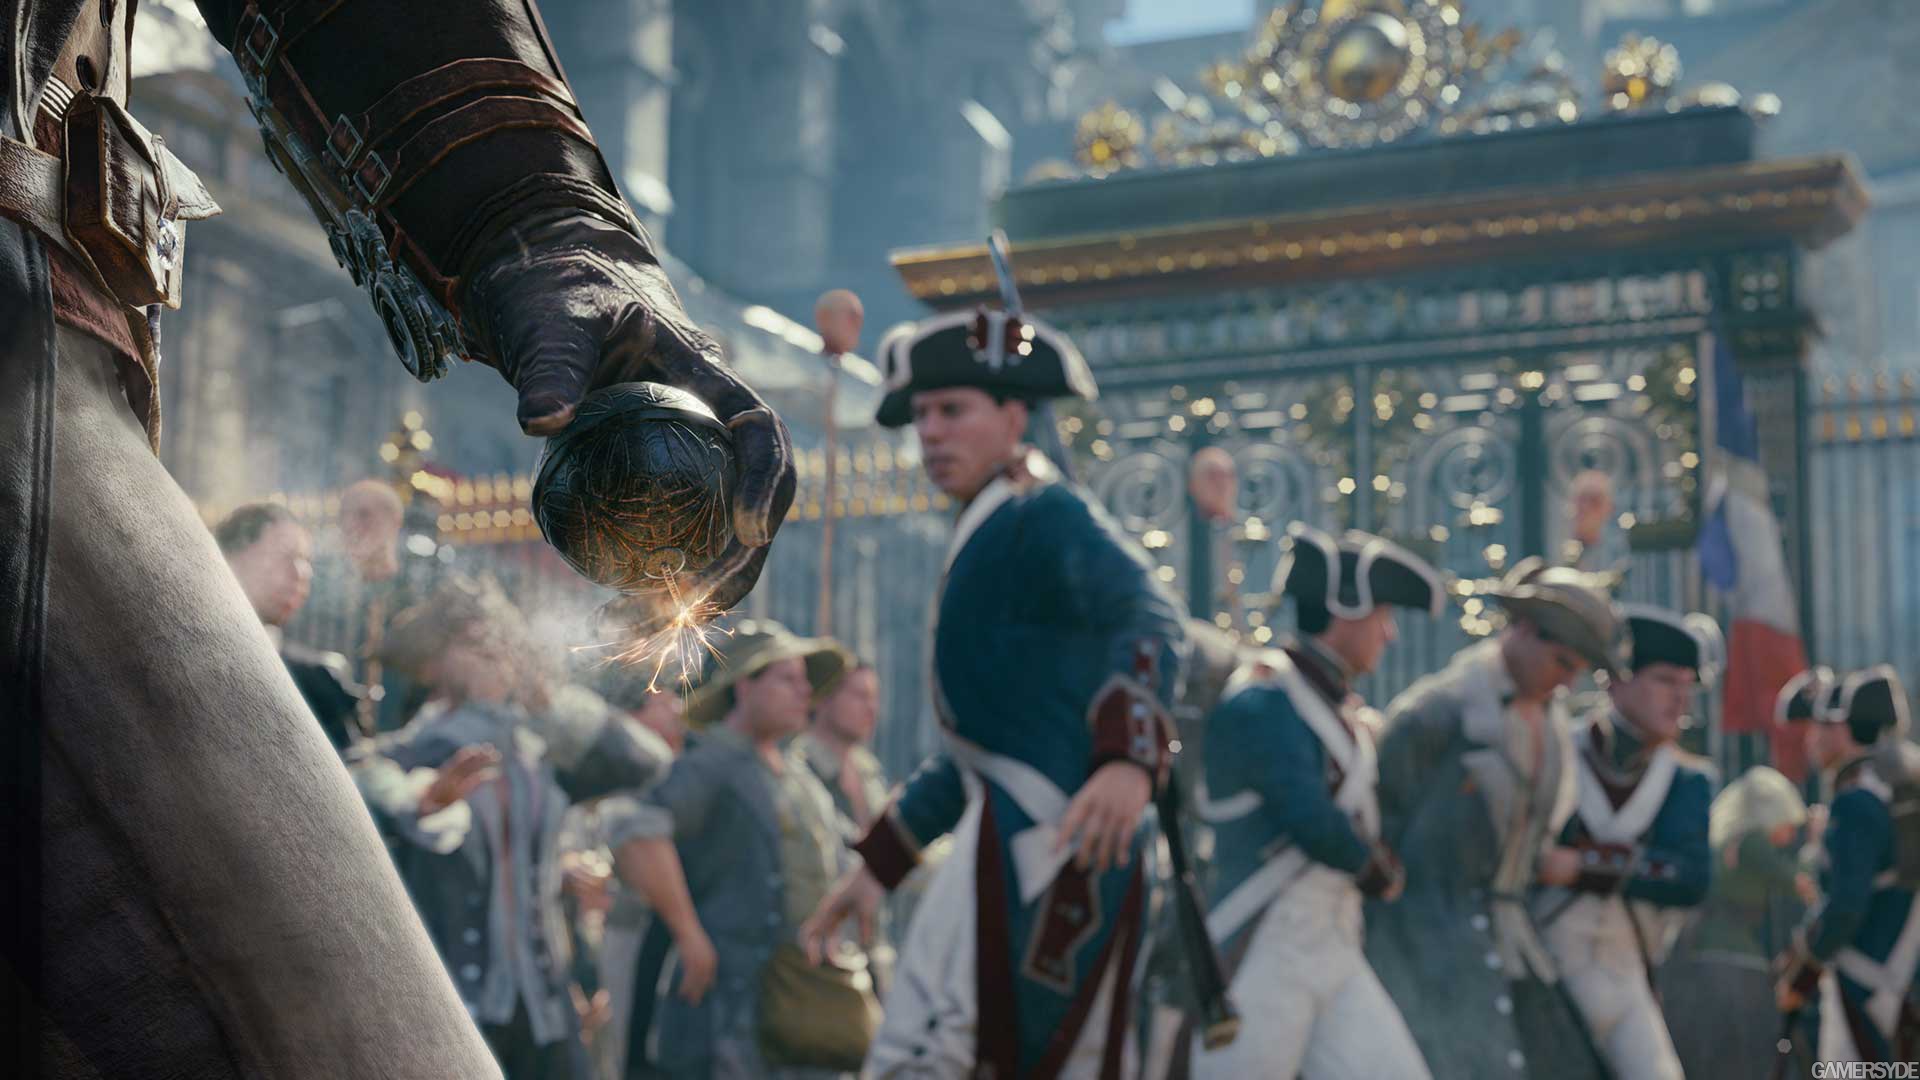 دانلود بازی Assassin’s Creed: Unity برای pc نسخه3DM | نسخه ریلودد هم افزوده شد 1